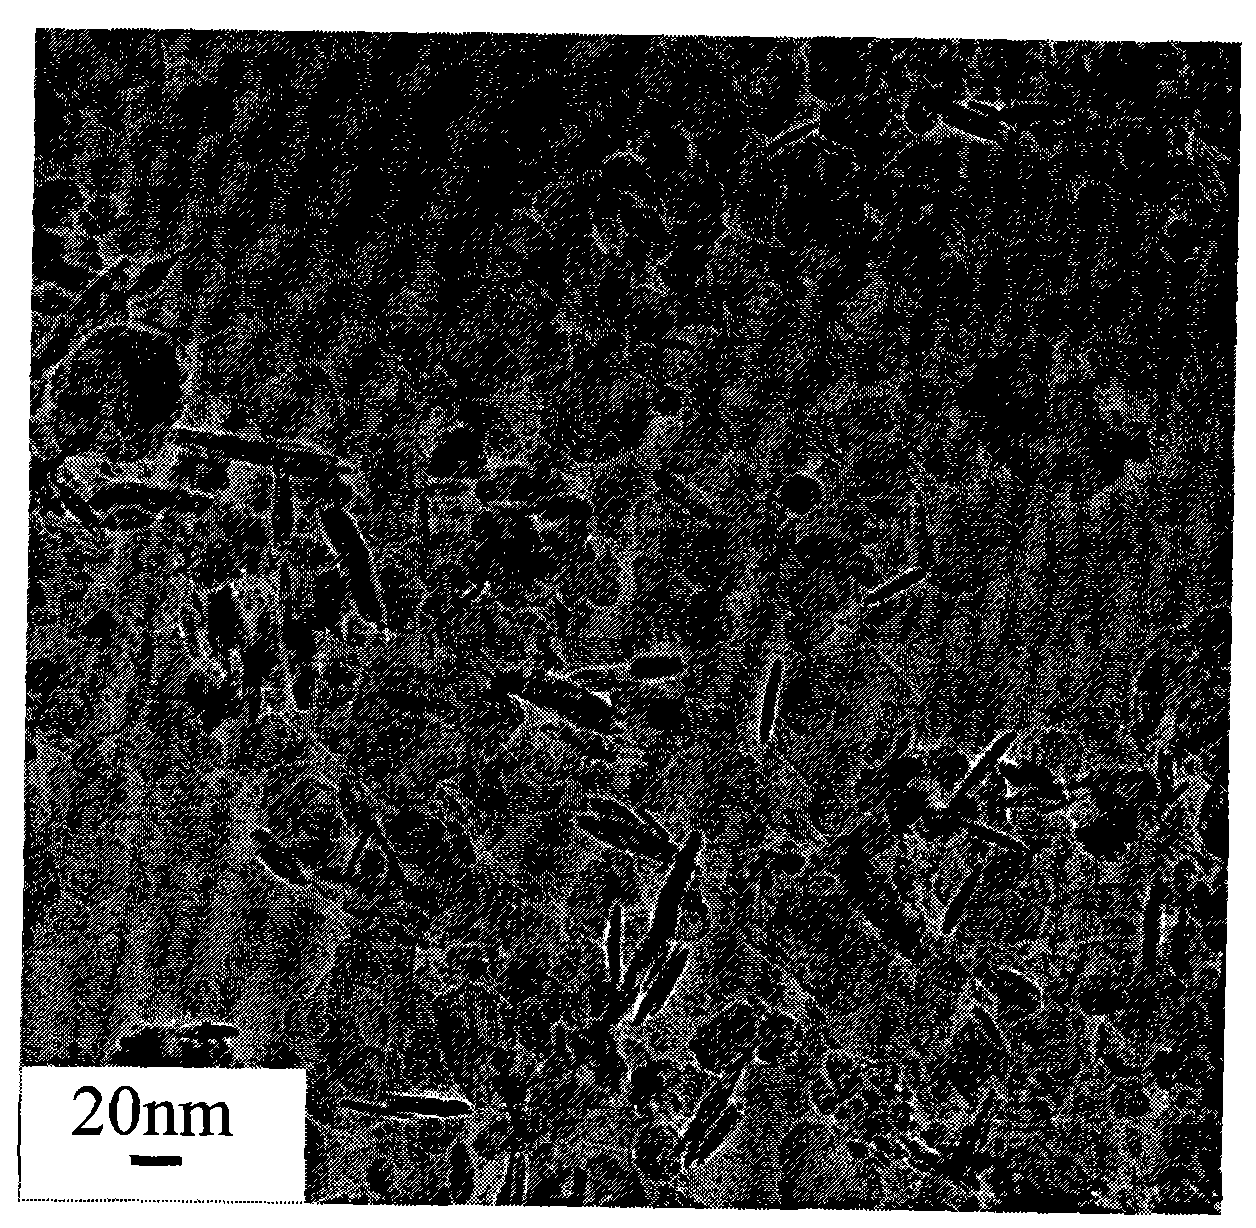 Method for preparing ferroferric oxide nano sheet